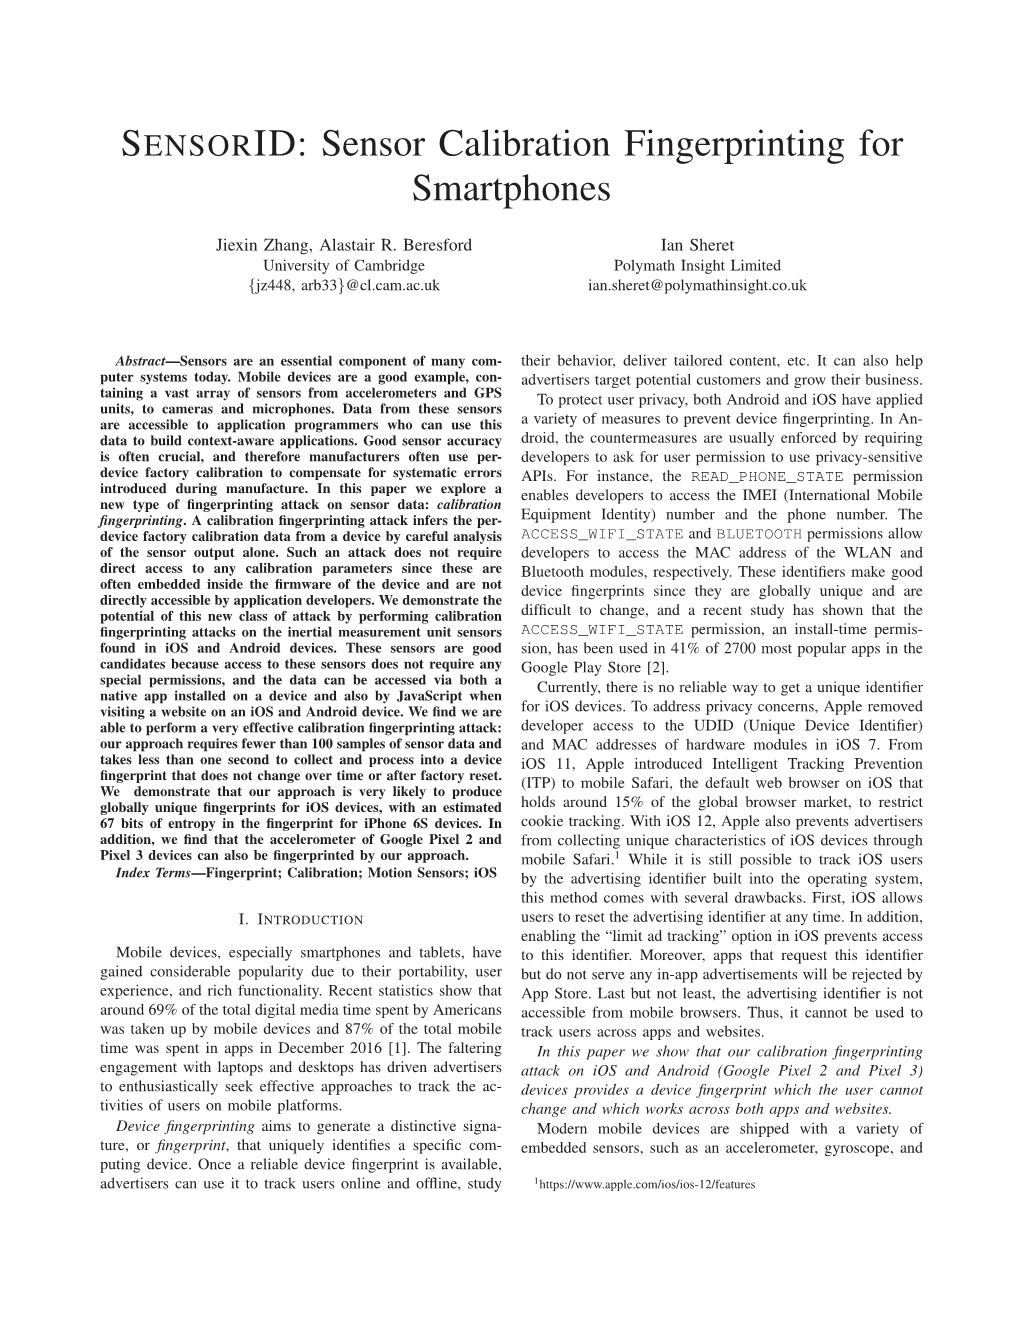 Sensor Calibration Fingerprinting for Smartphones